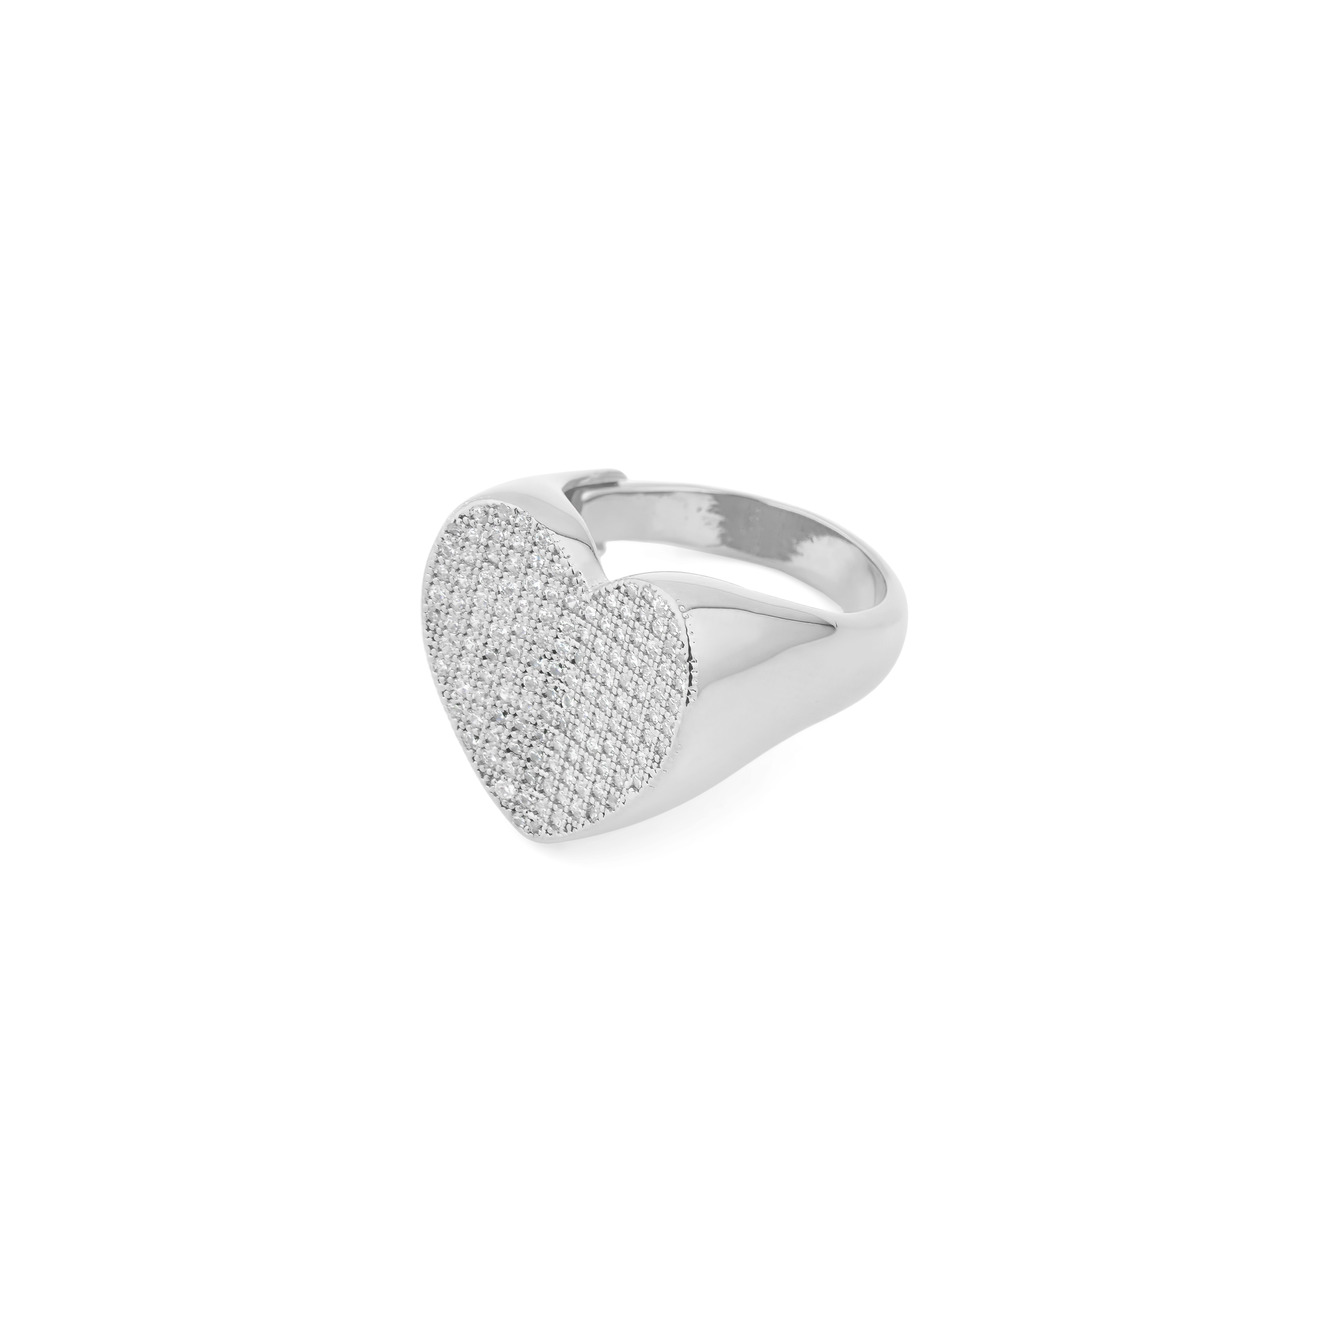 Free Form Jewelry Серебристое кольцо-печатка в форме сердца с кристаллами free form jewelry серебристое двойное кольцо с бантиком и кристаллами